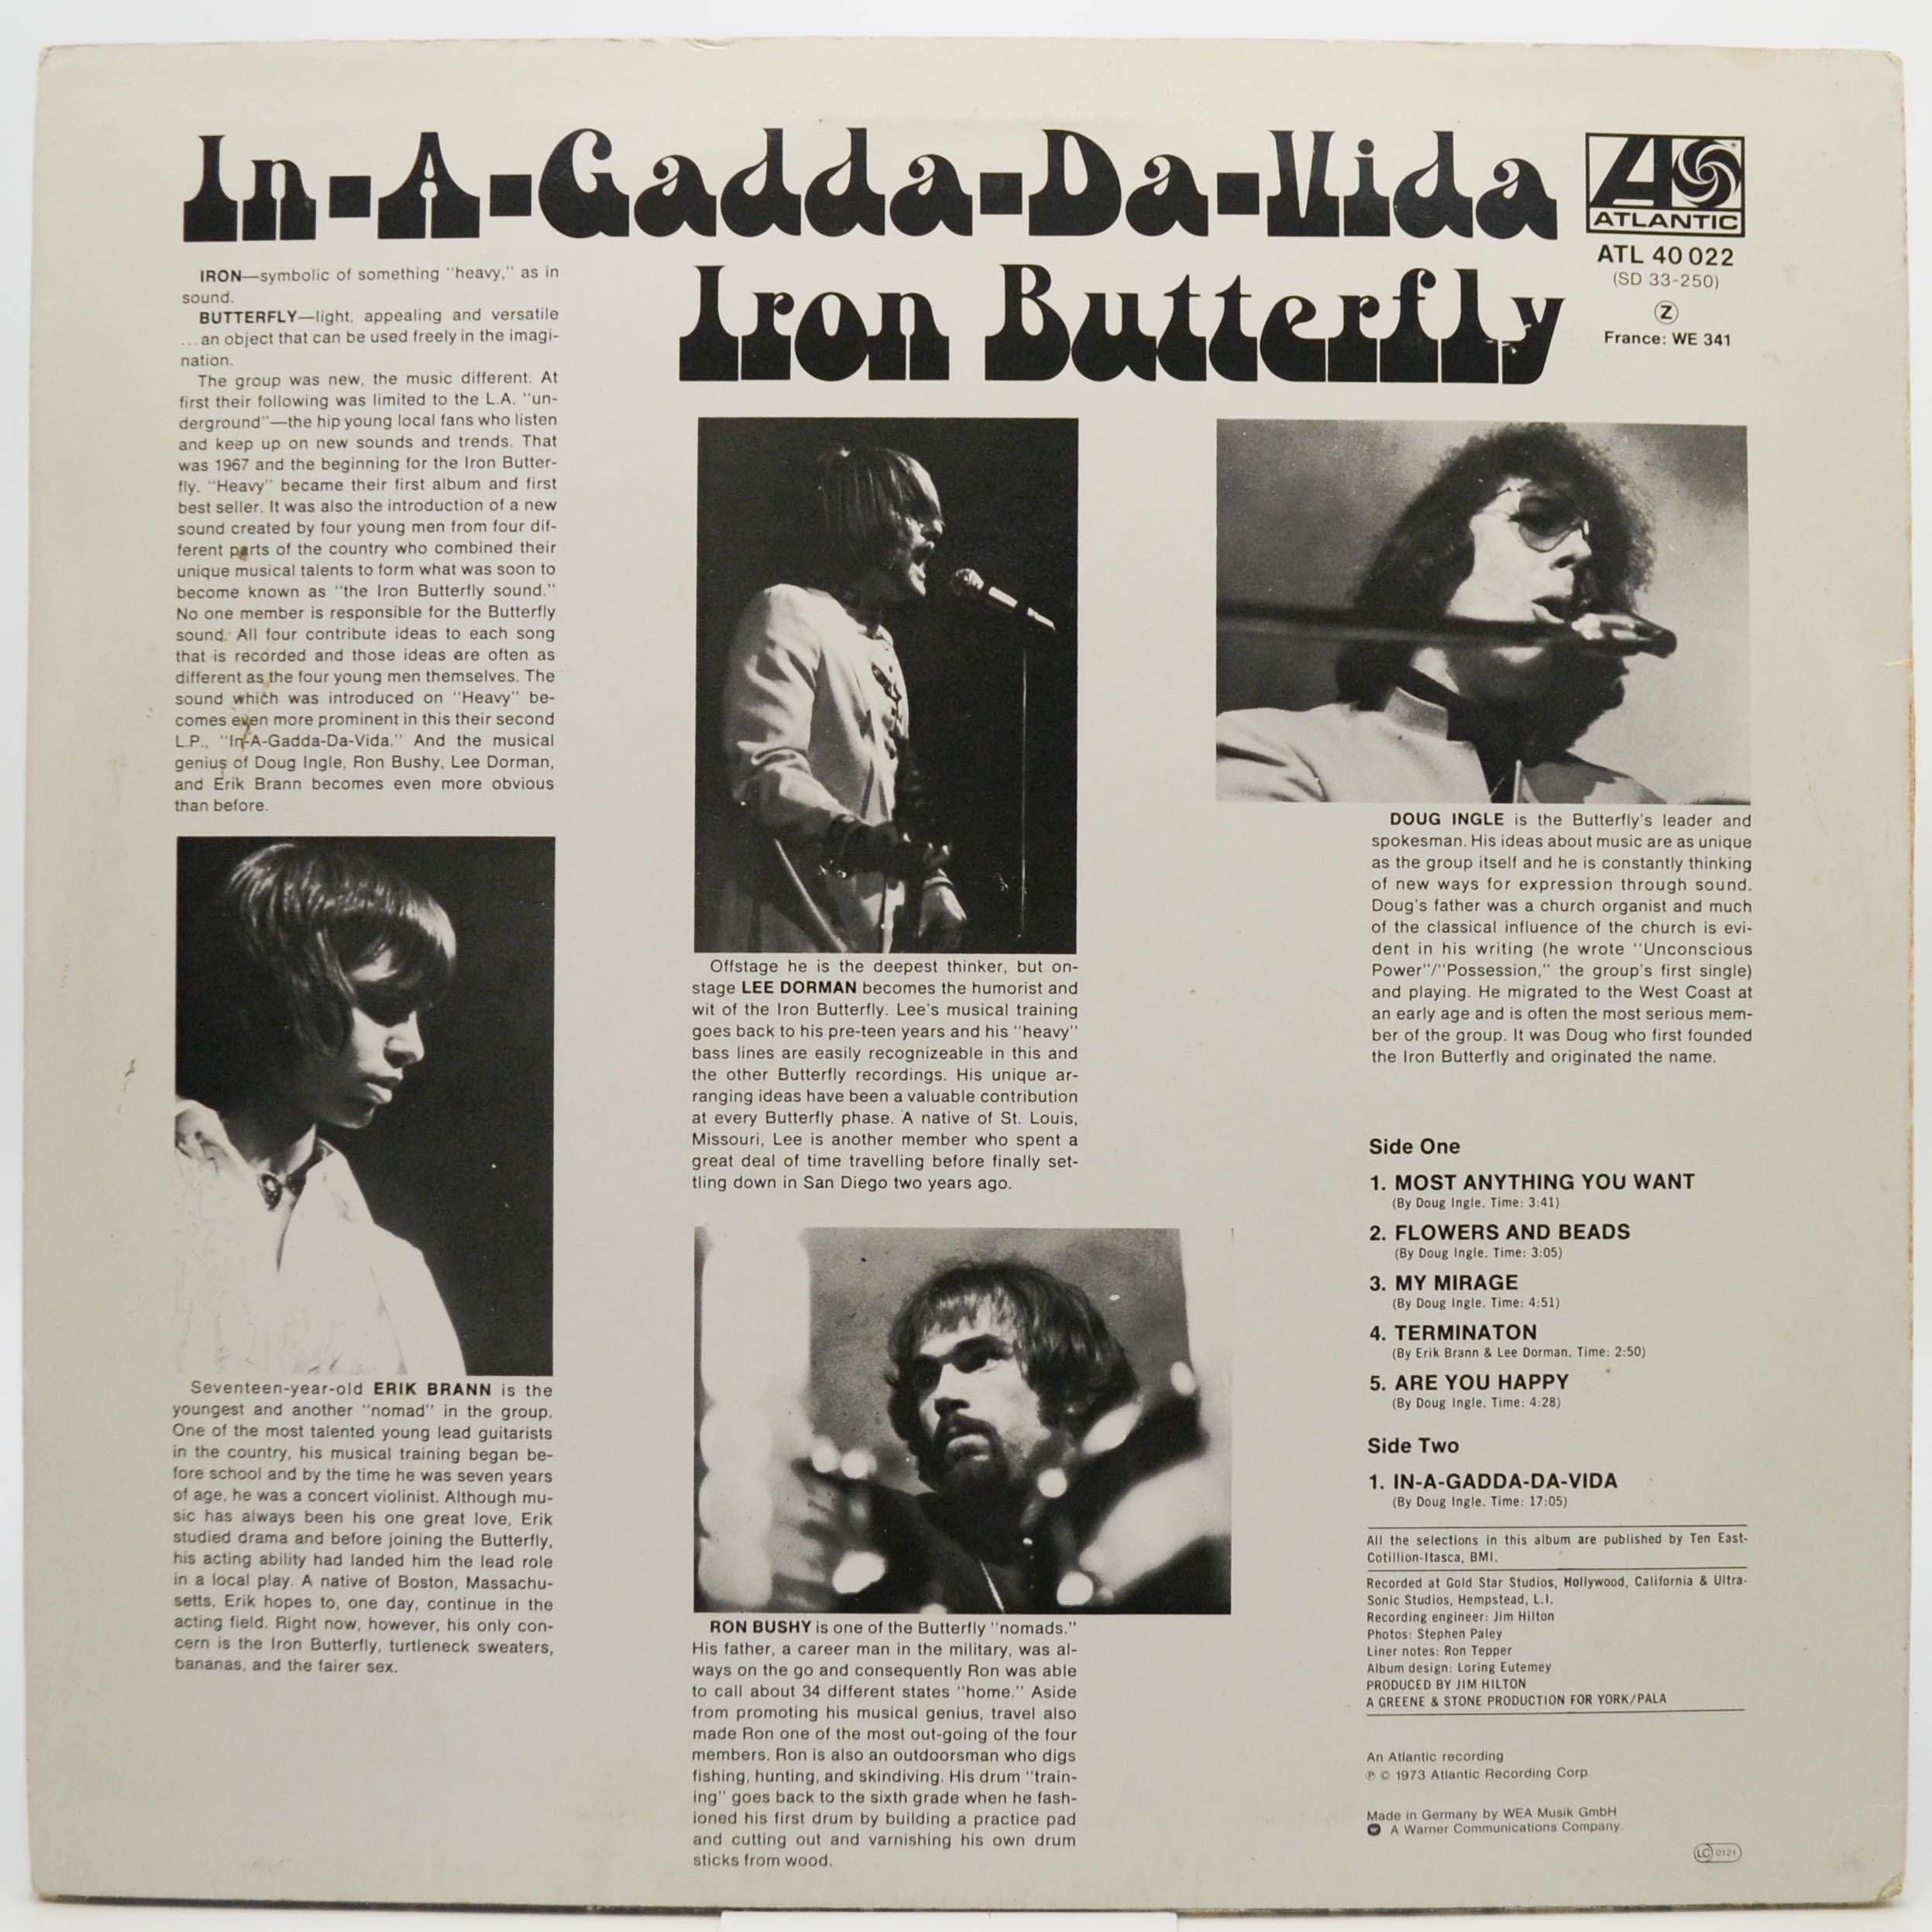 Iron Butterfly — In-A-Gadda-Da-Vida, 1968